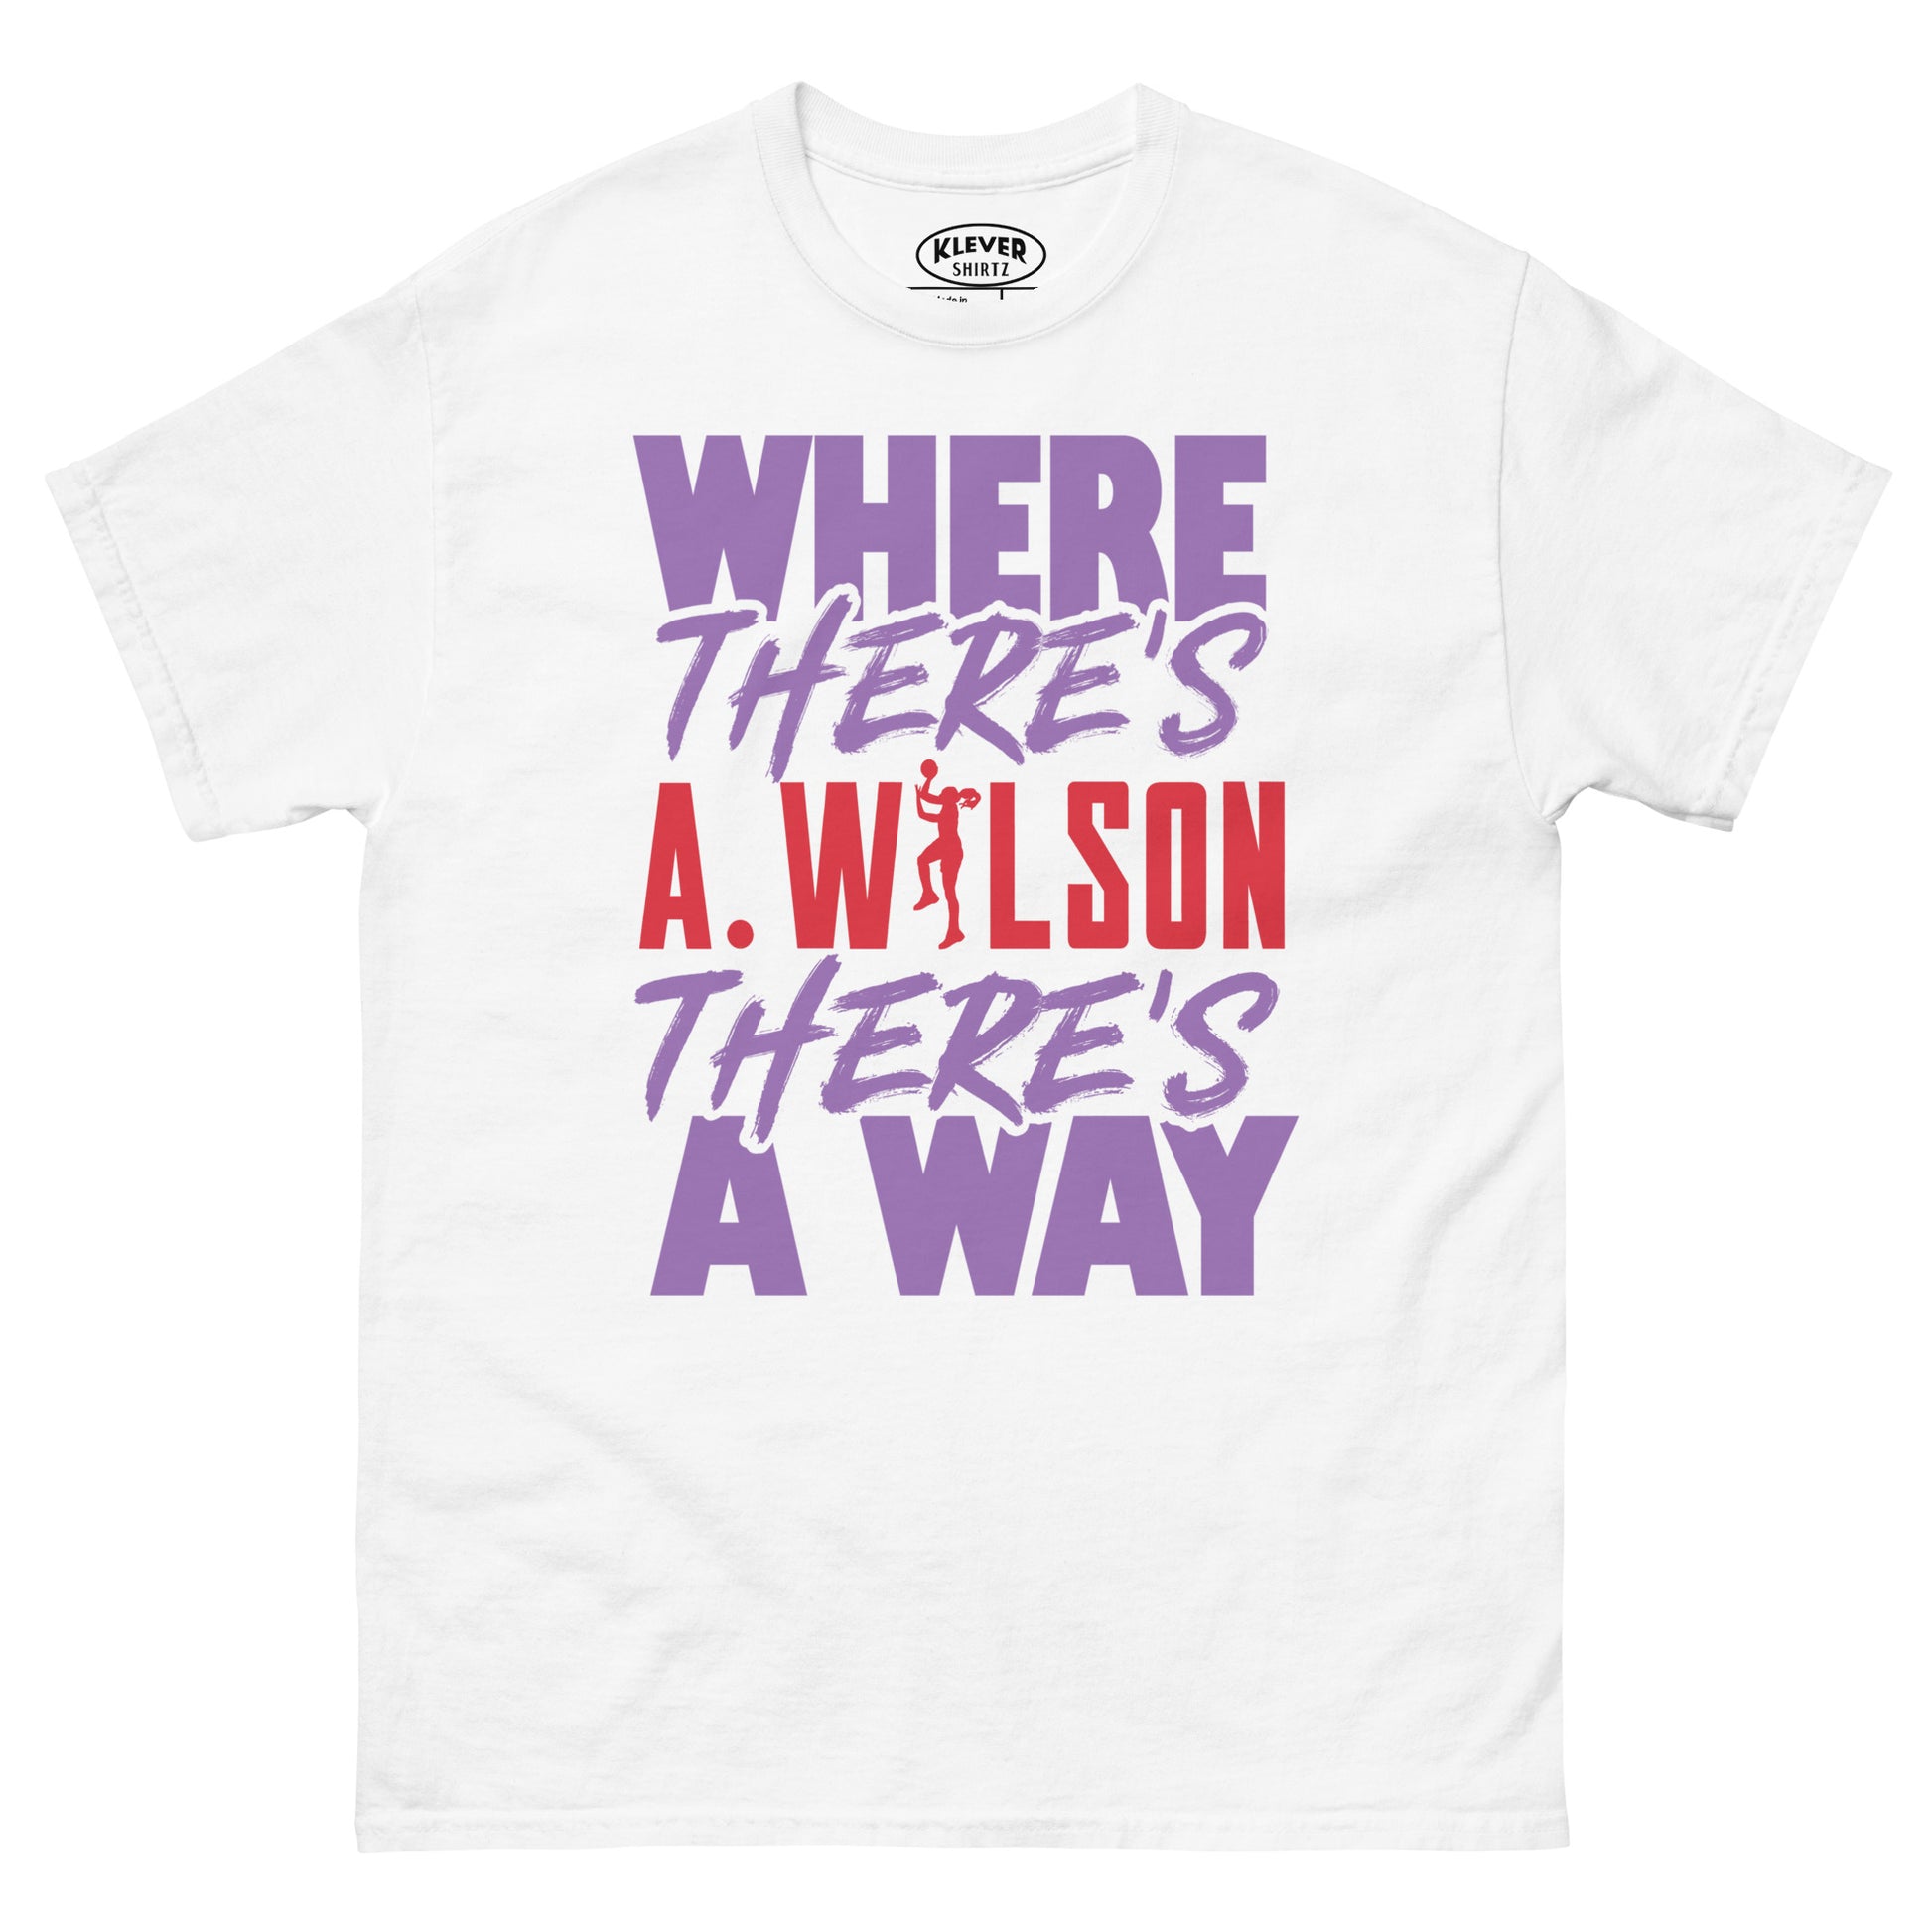 A. WILSON - Klever Shirtz